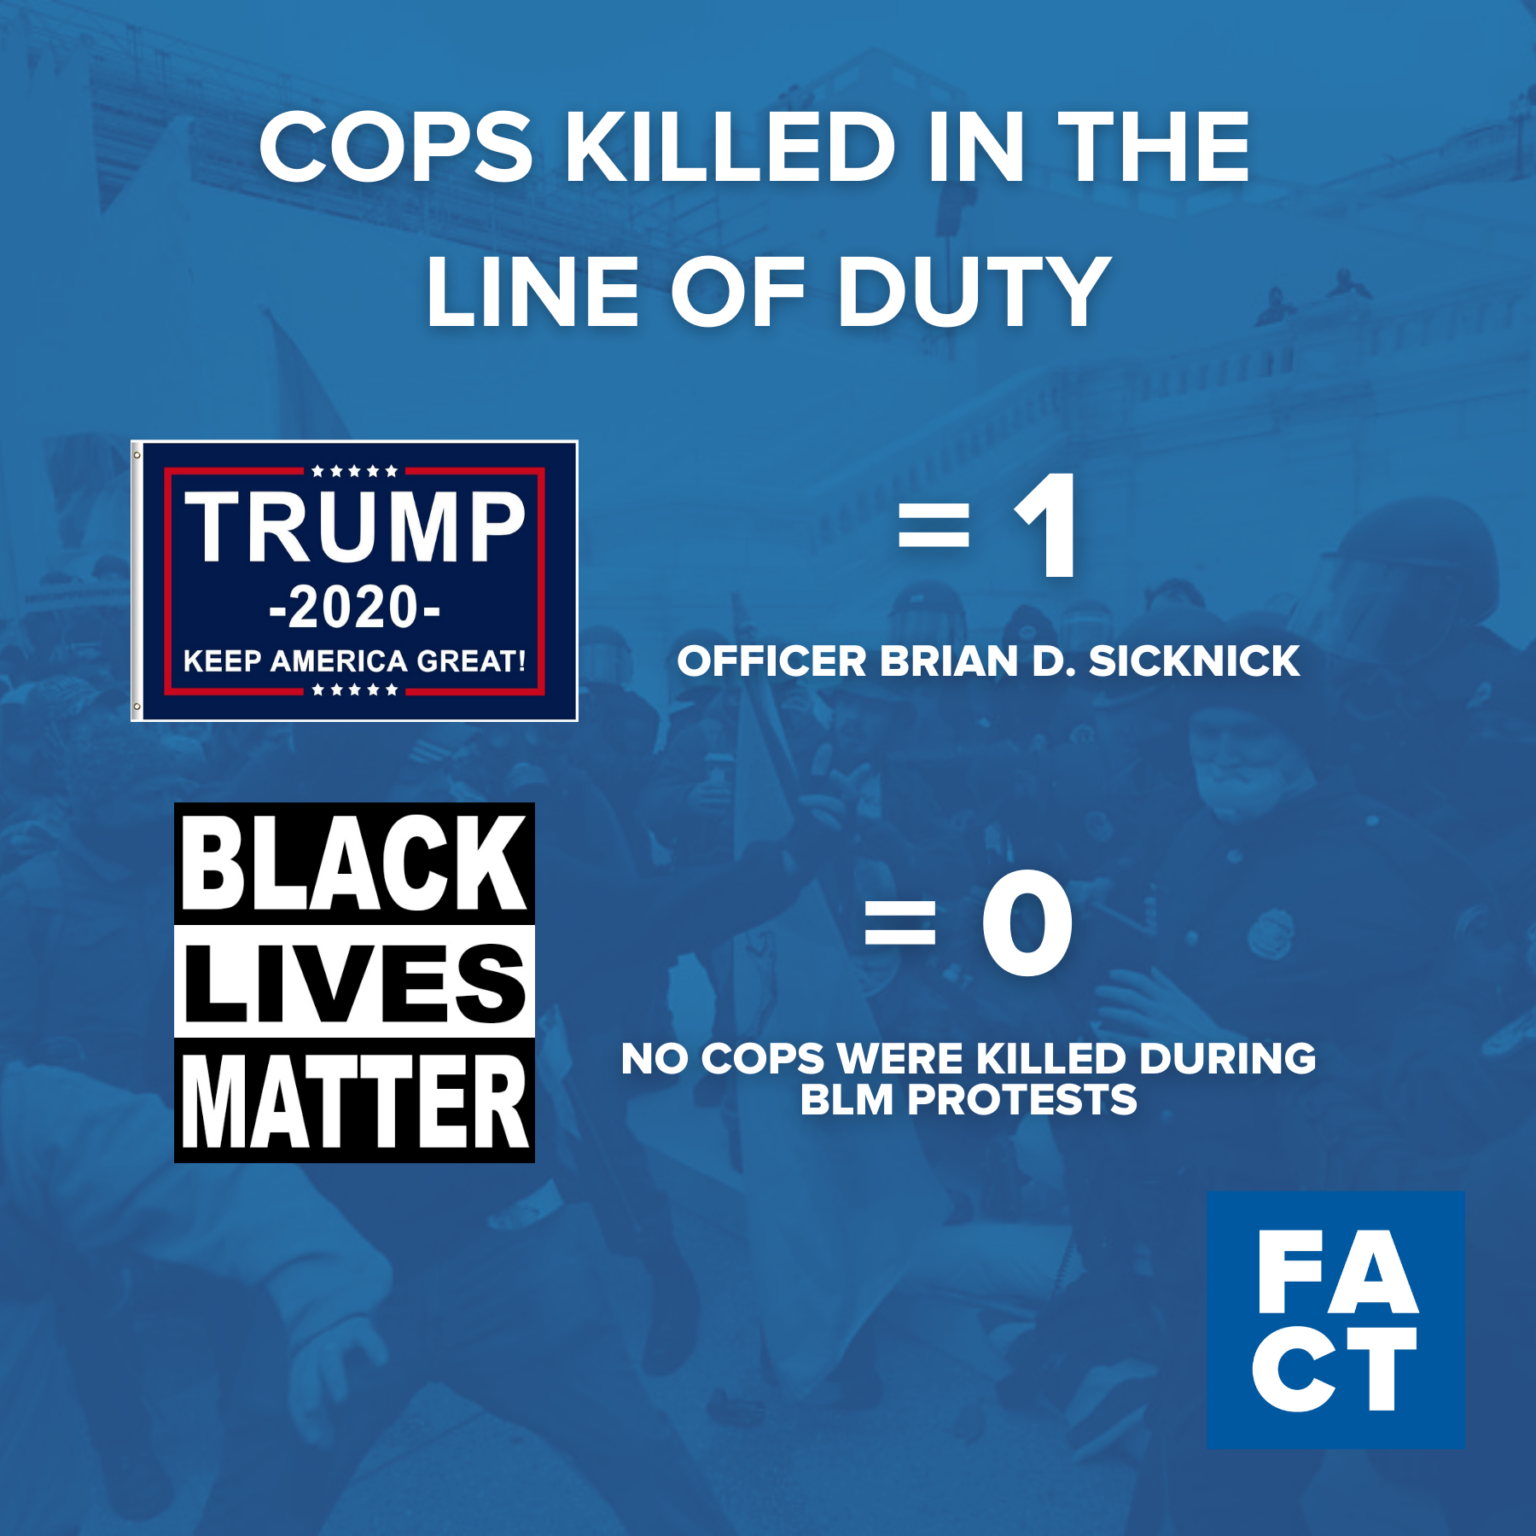 O motim de Trump matou mais policiais do que as vidas negras. Protestos